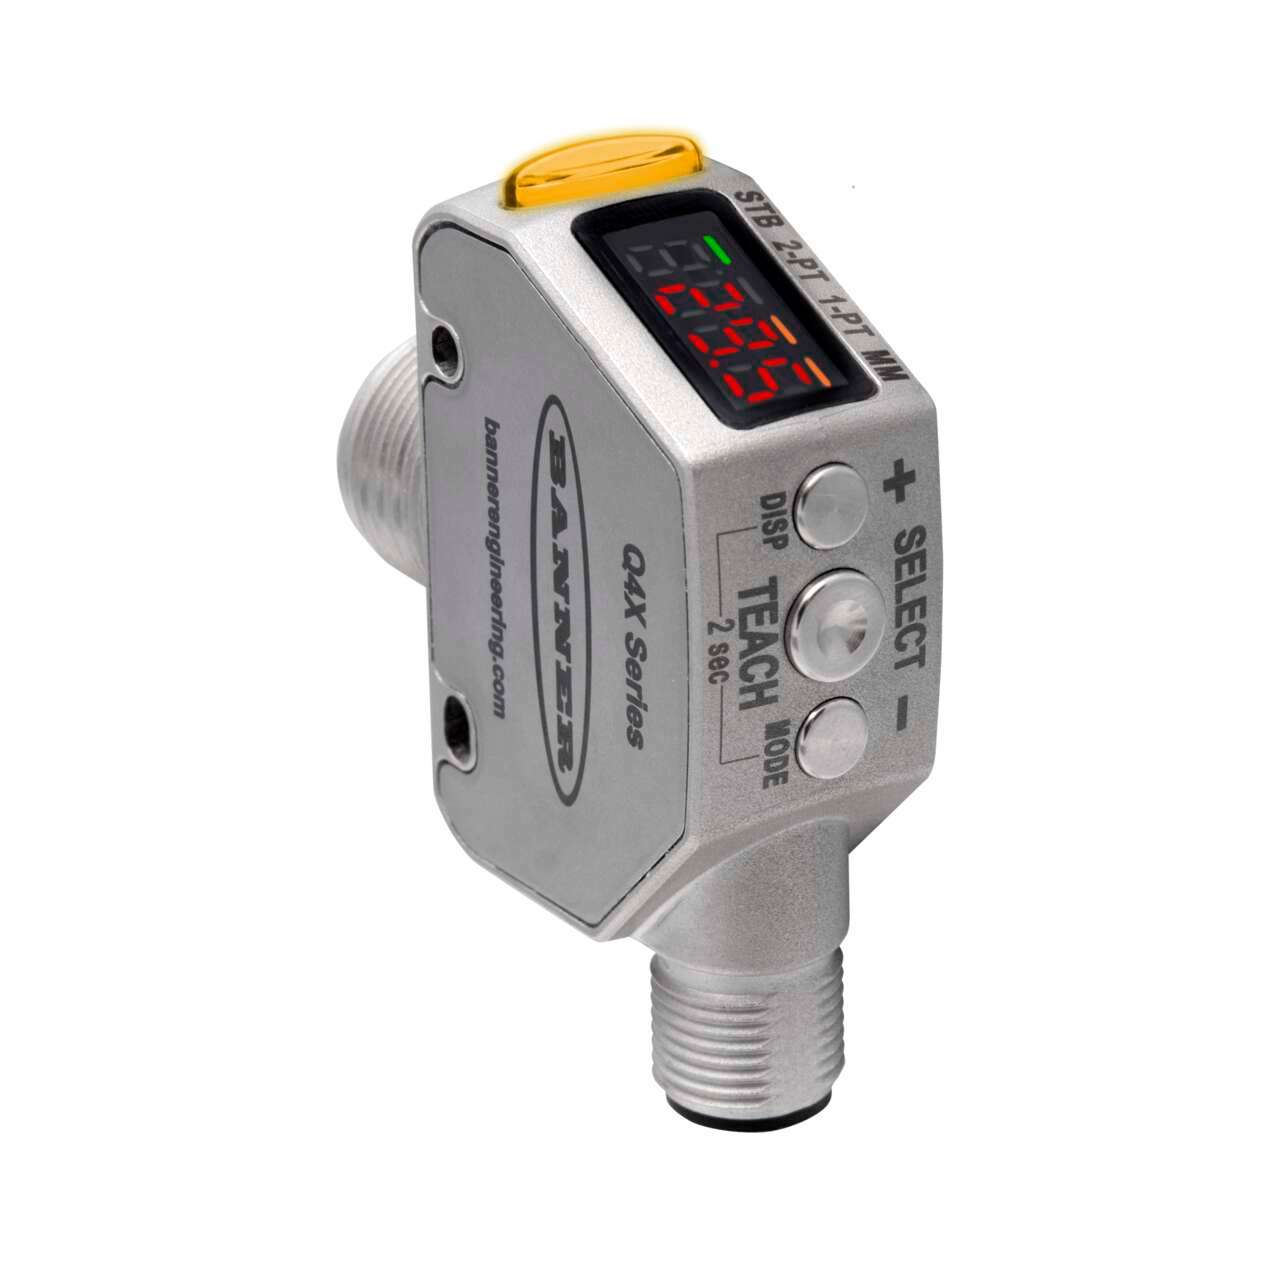 Q4X laser measurement sensor